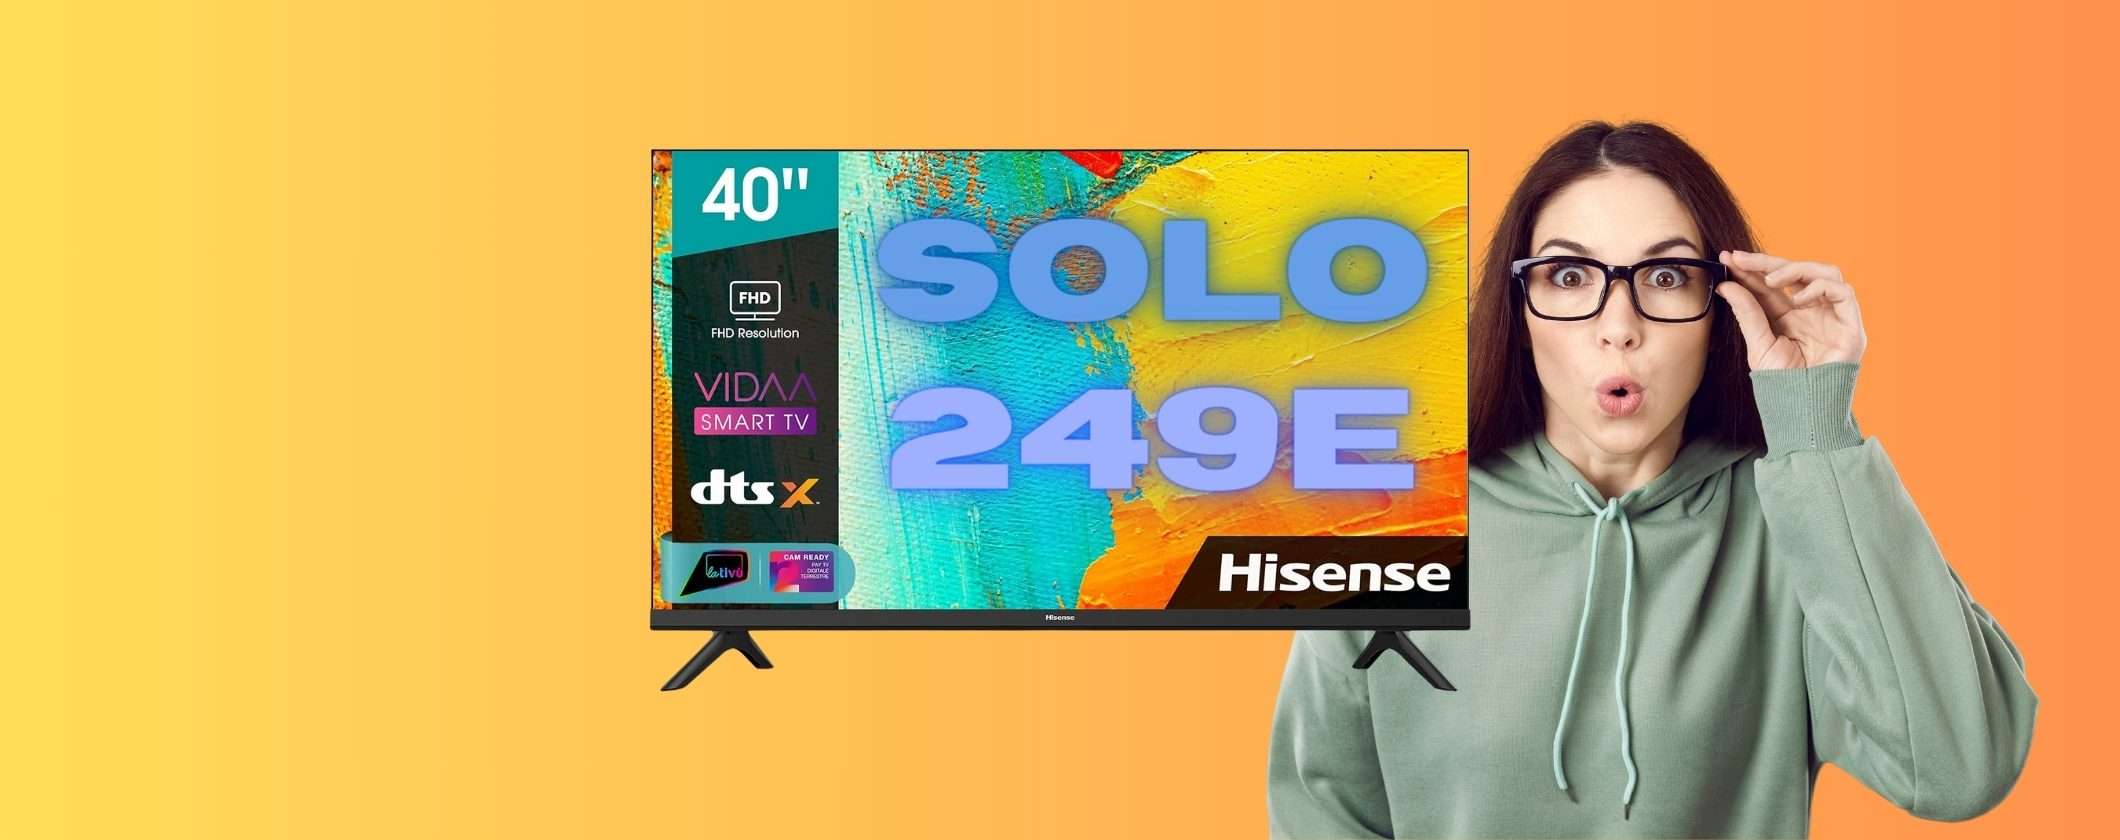 Smart TV Hisense LED 40